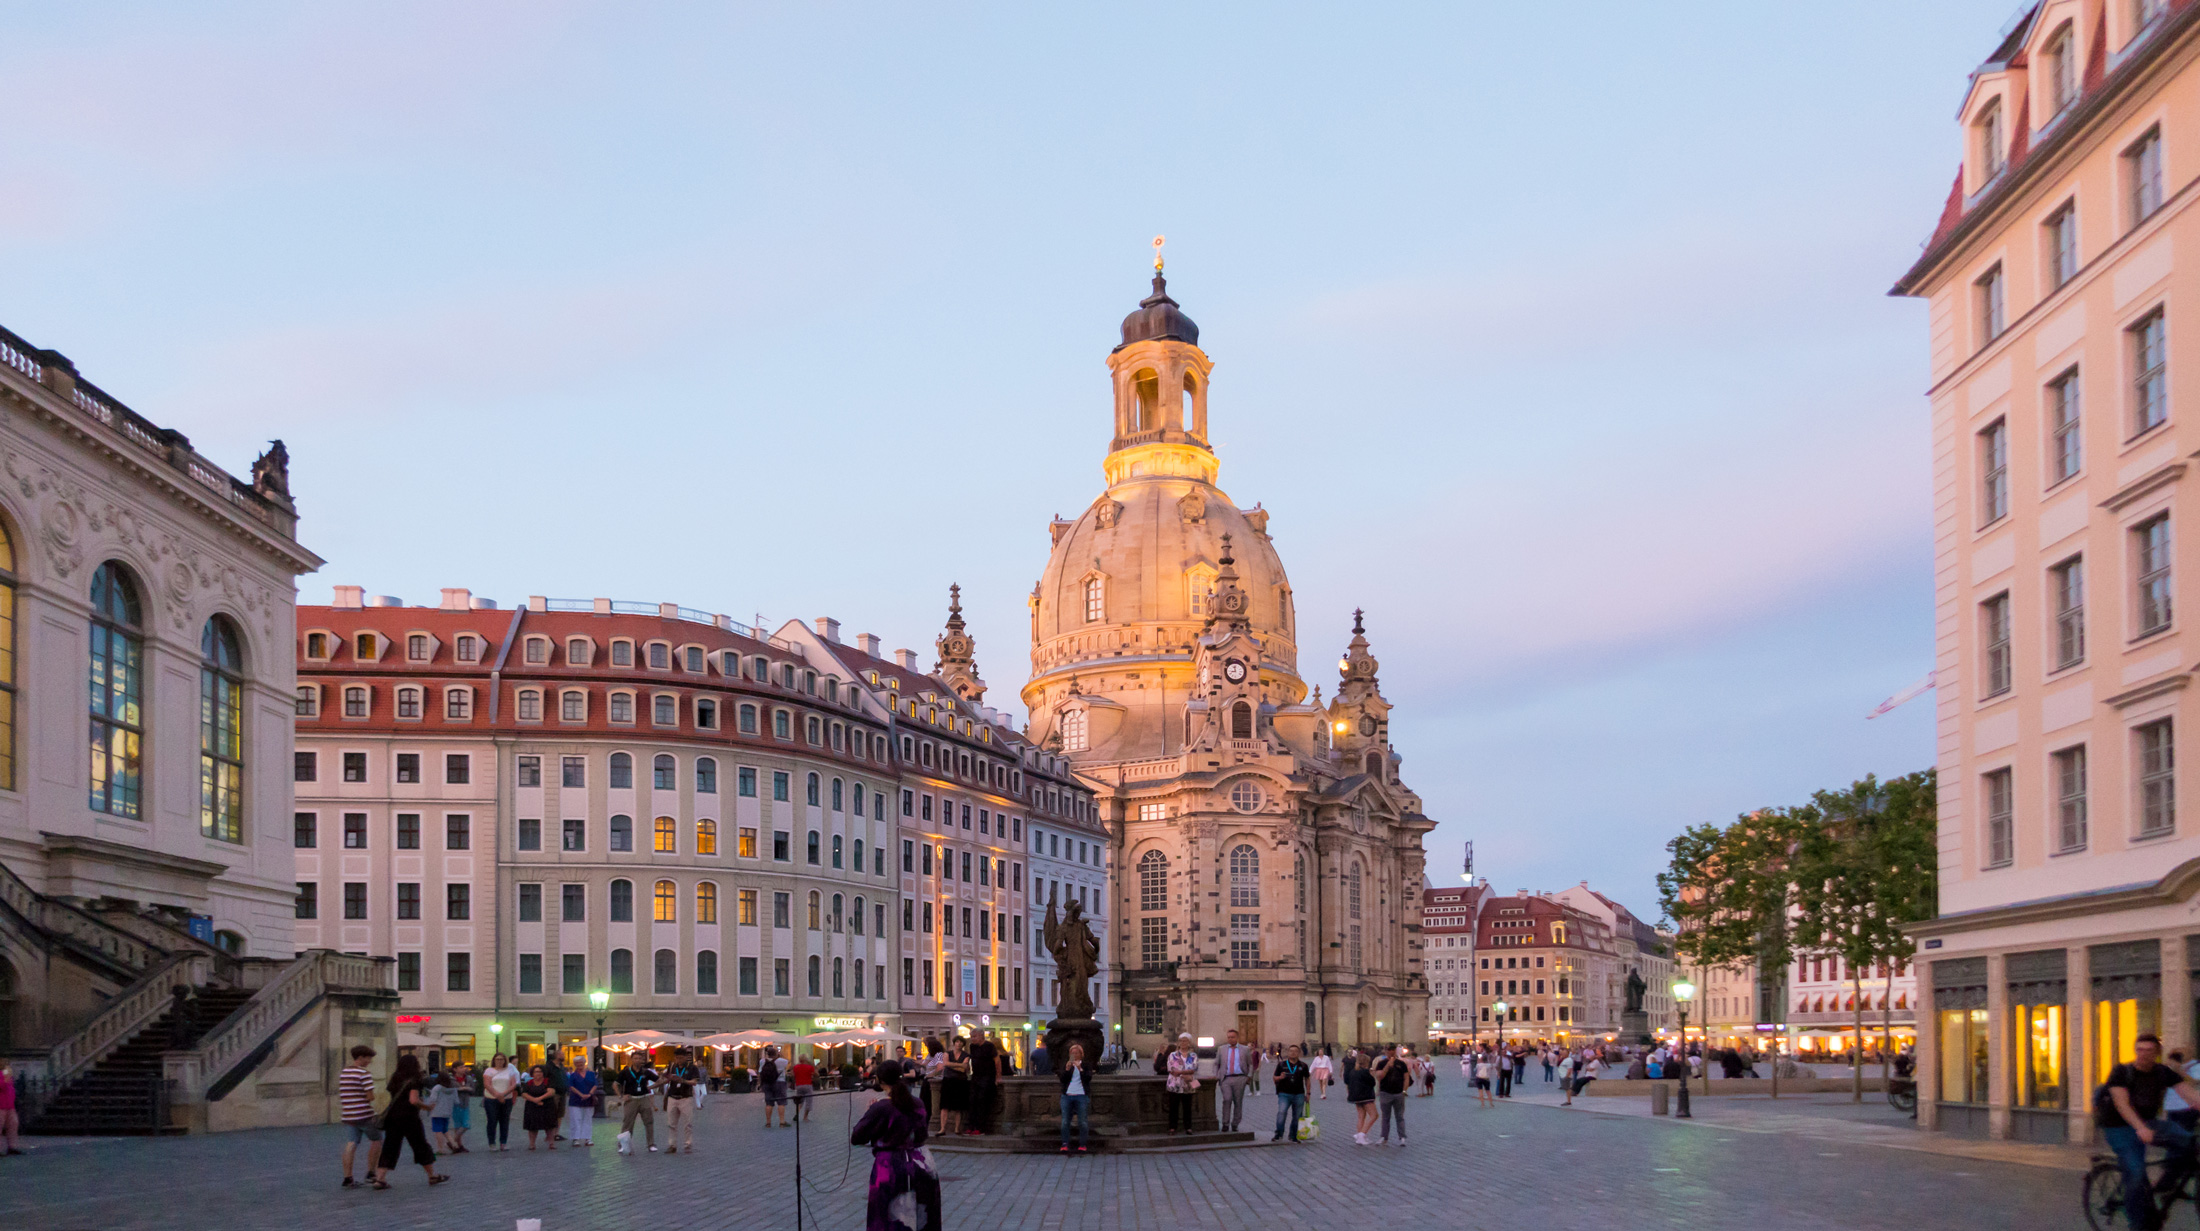 Dresden Frauenkirche ©2019 Richard Schober